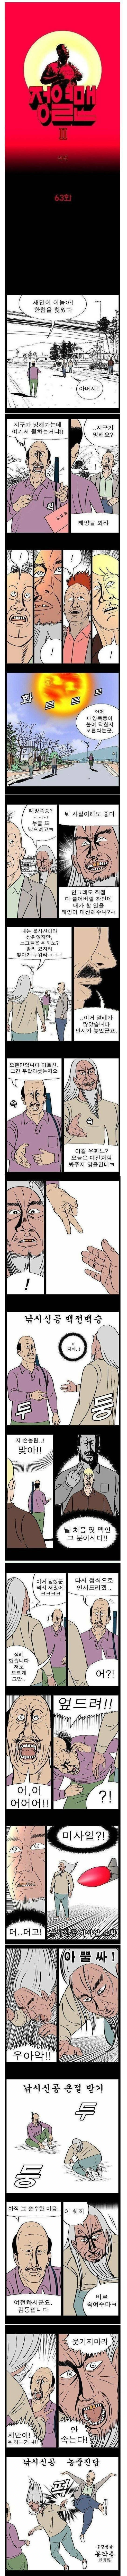 대한민국 웹툰 역대 최고의 격투씬